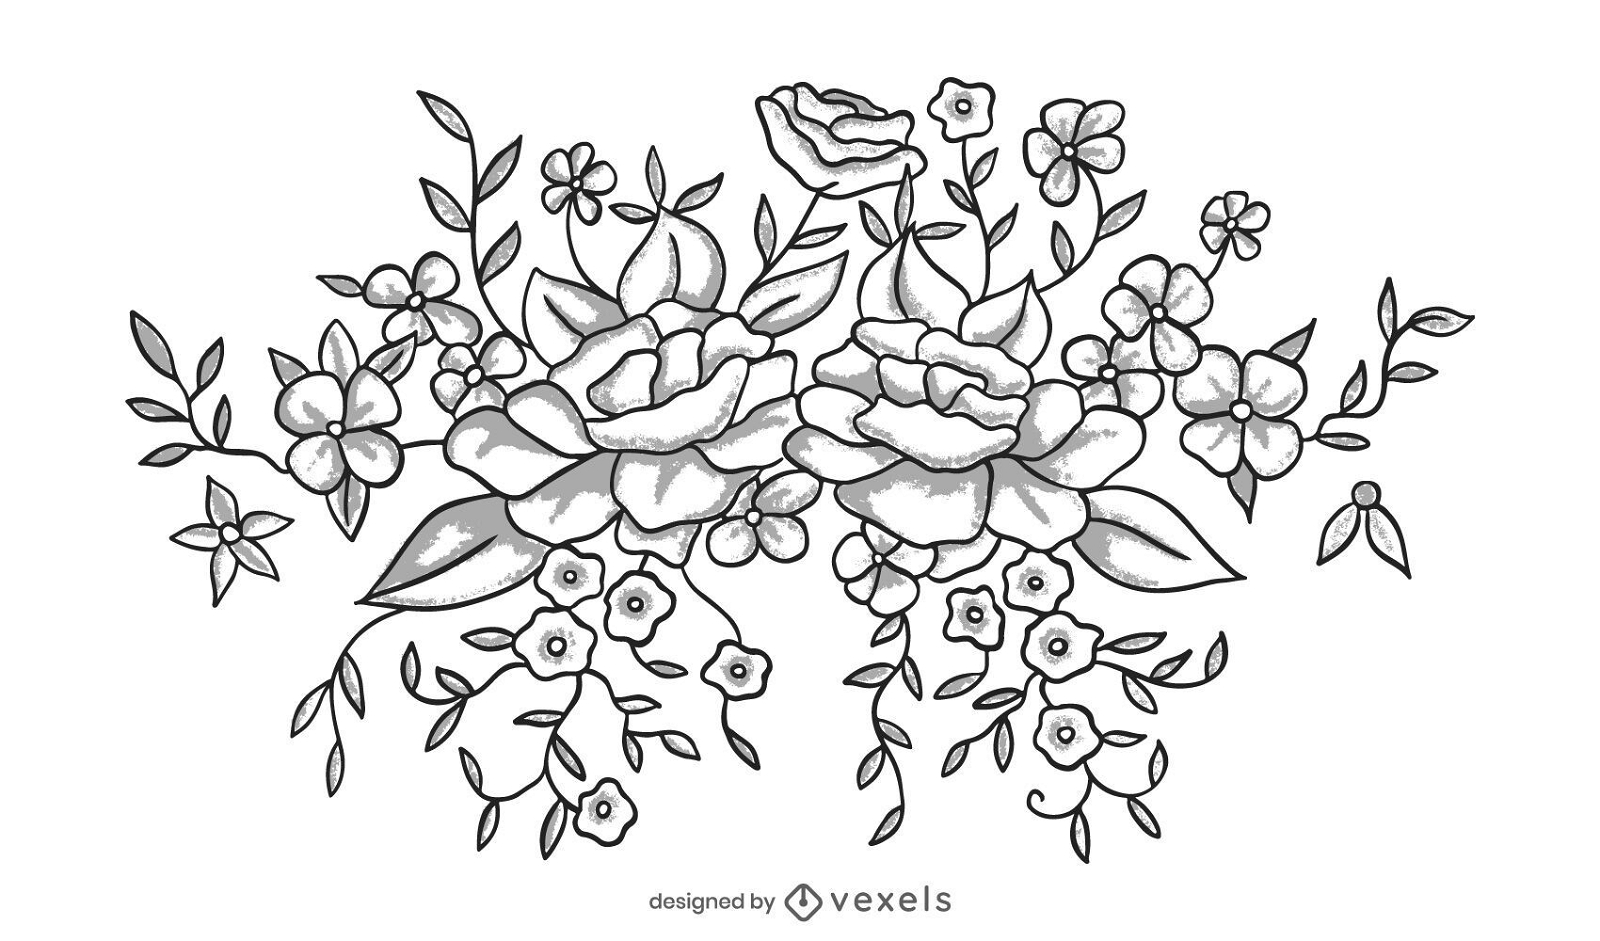 Black and white flower illustration design